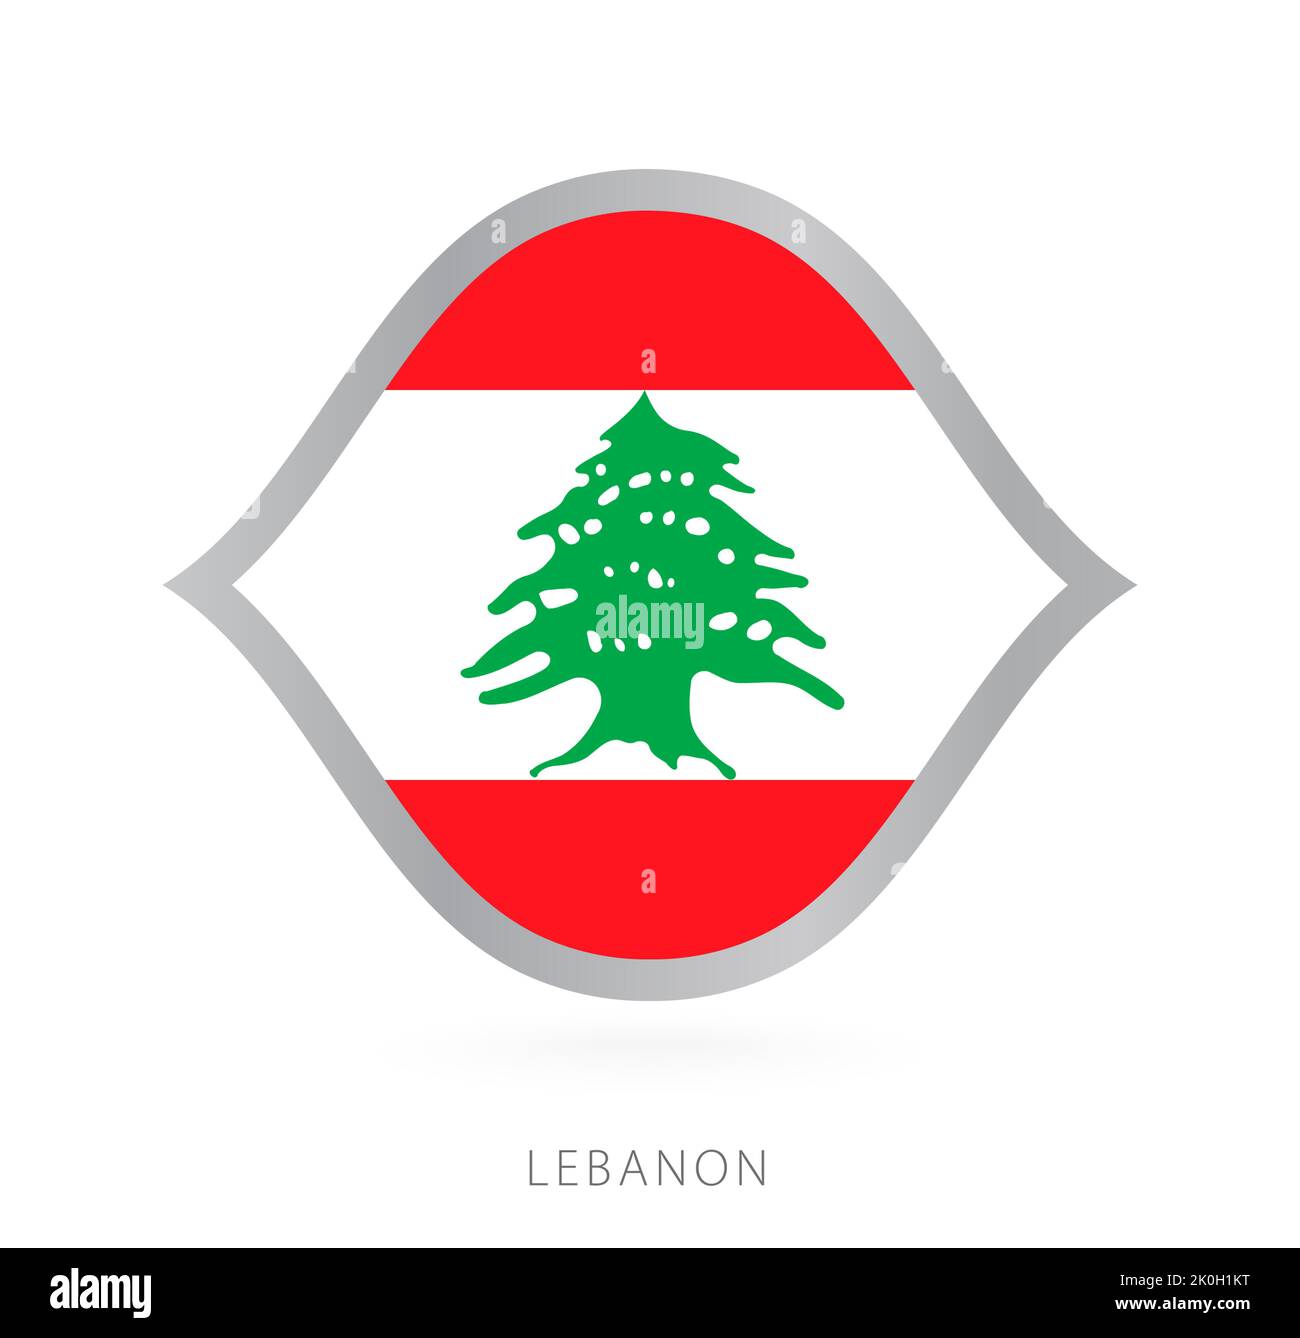 Drapeau de l'équipe nationale du Liban pour les compétitions internationales de basket-ball. Signe vectoriel. Illustration de Vecteur